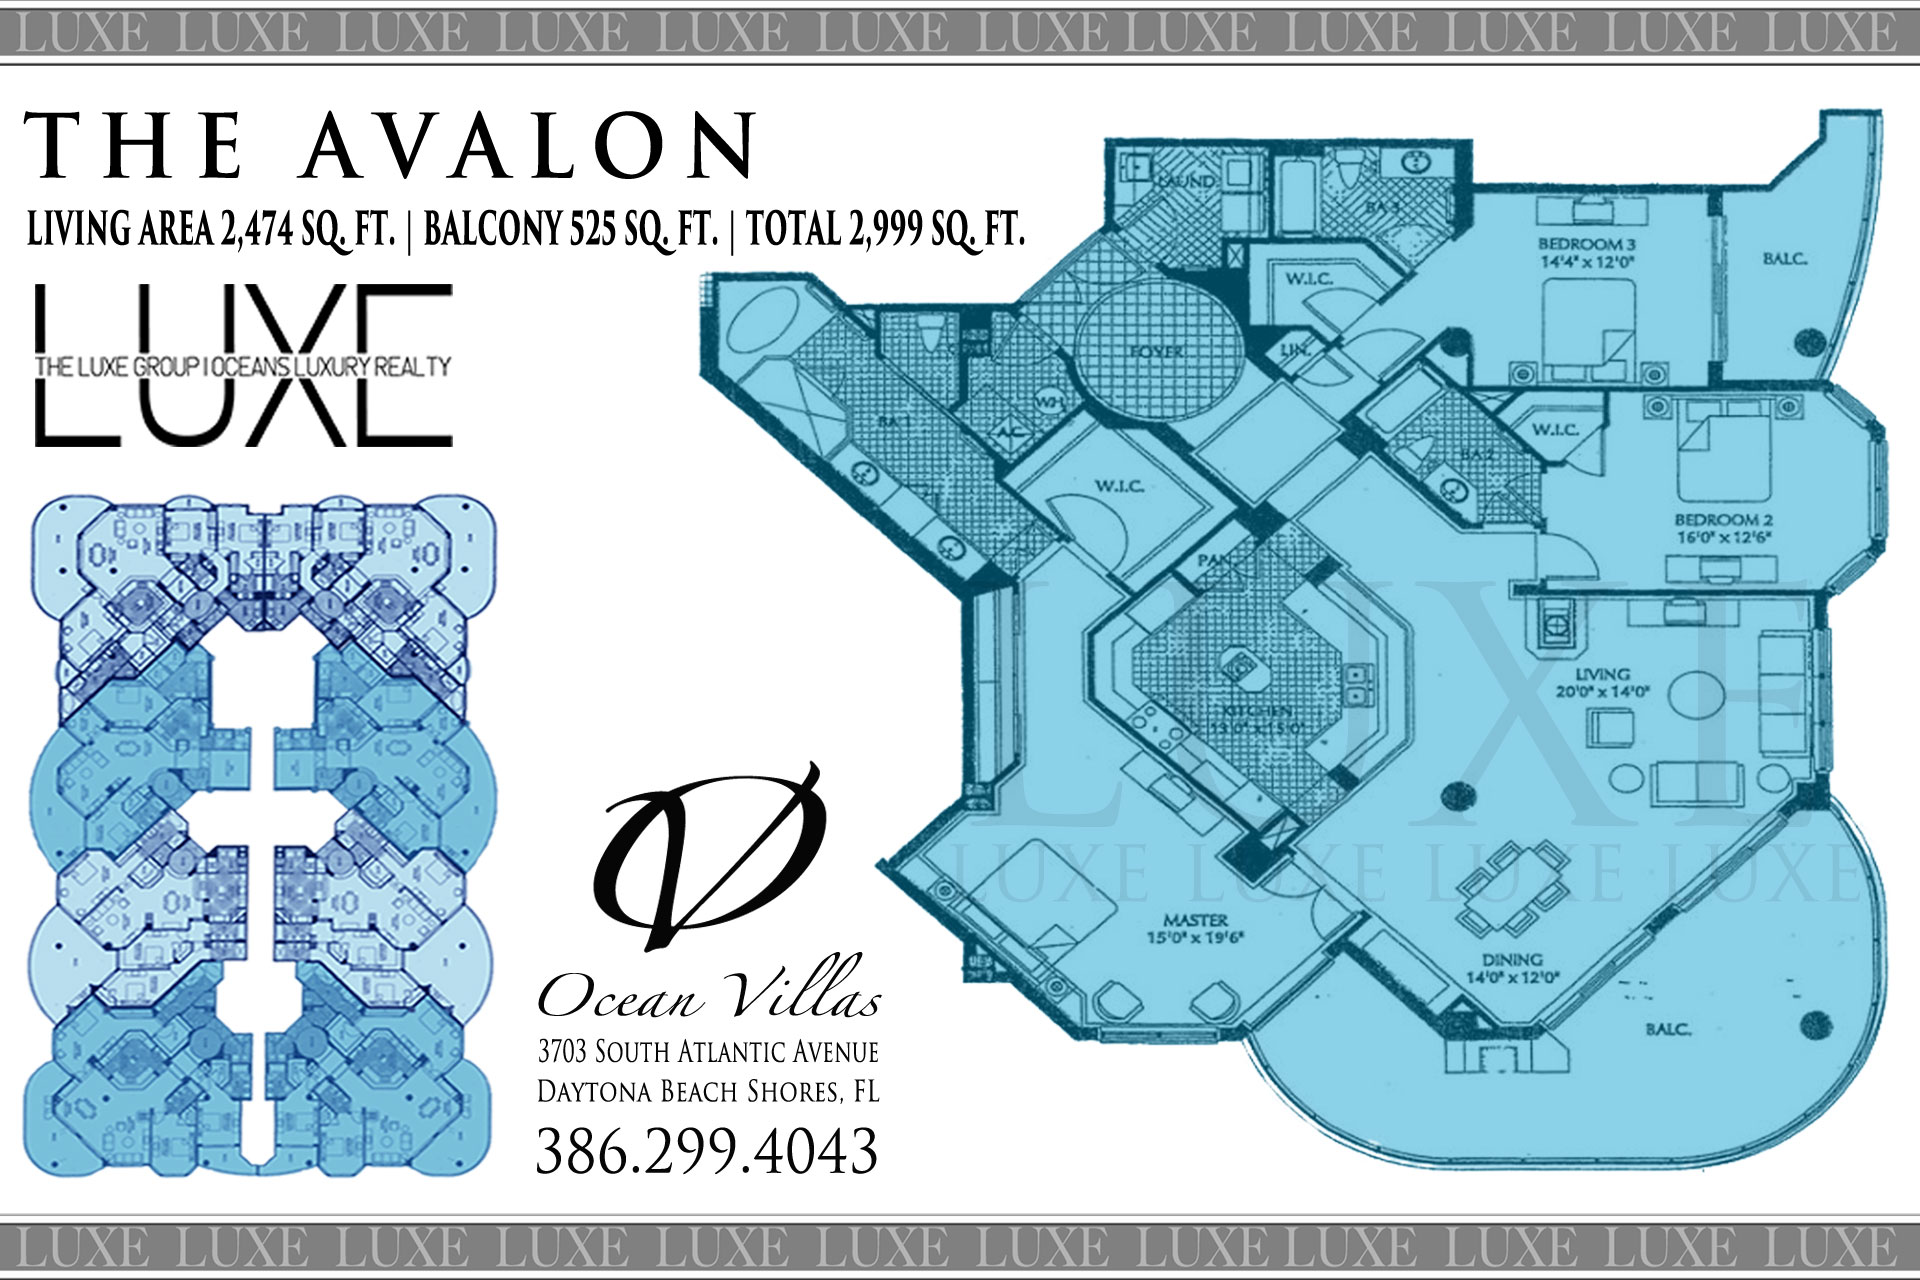 Ocean Villas Condo Avalon Floor Plan A Units 07 & 08 - 3703 South Atlantic Ave Daytona Beach Shores, Florida - The LUXE Group at Oceans Luxury Realty 386-299-4043